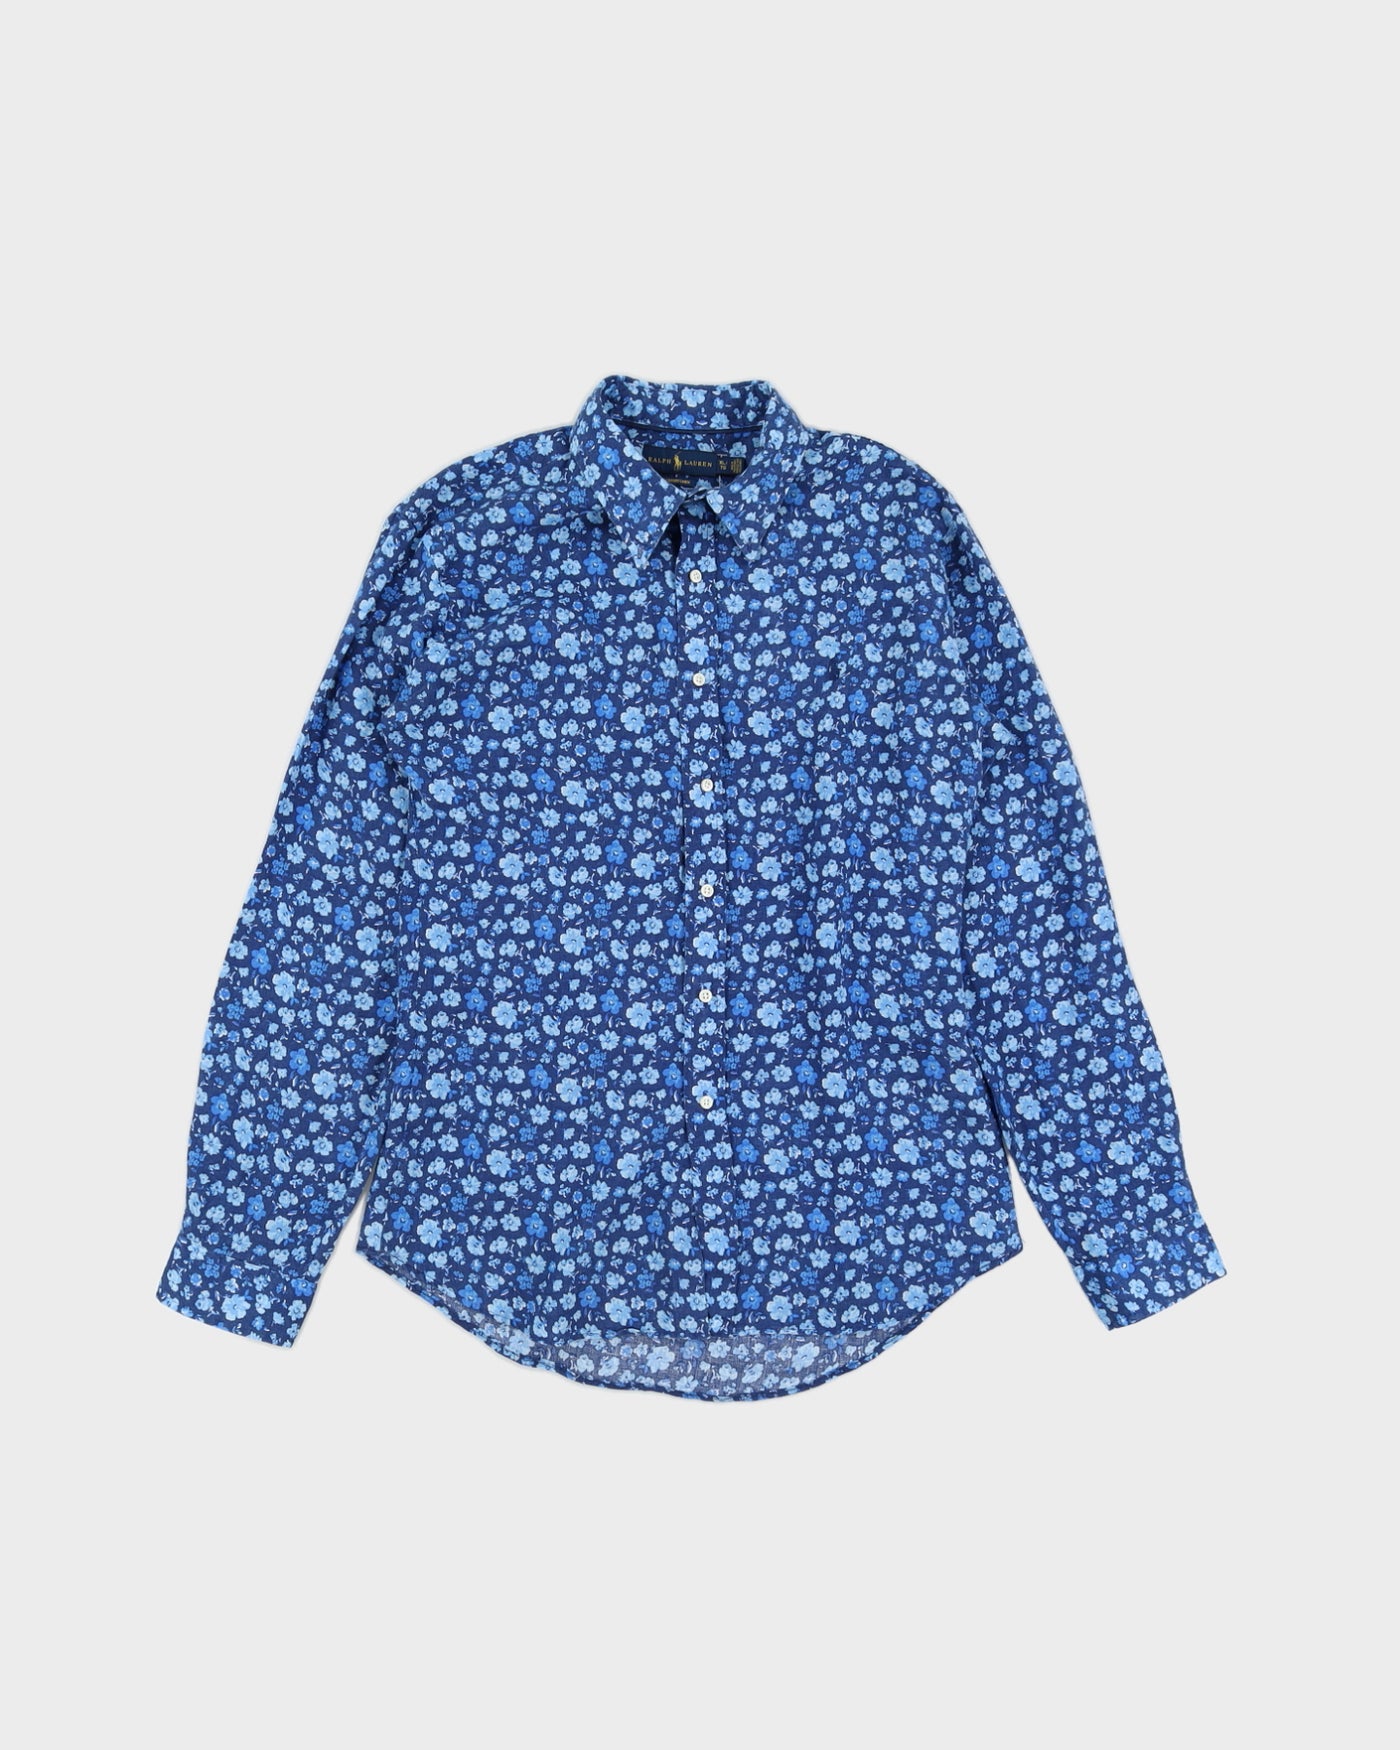 Ralph Lauren Flowers Printed Blue Long Sleeved Shirt  - L